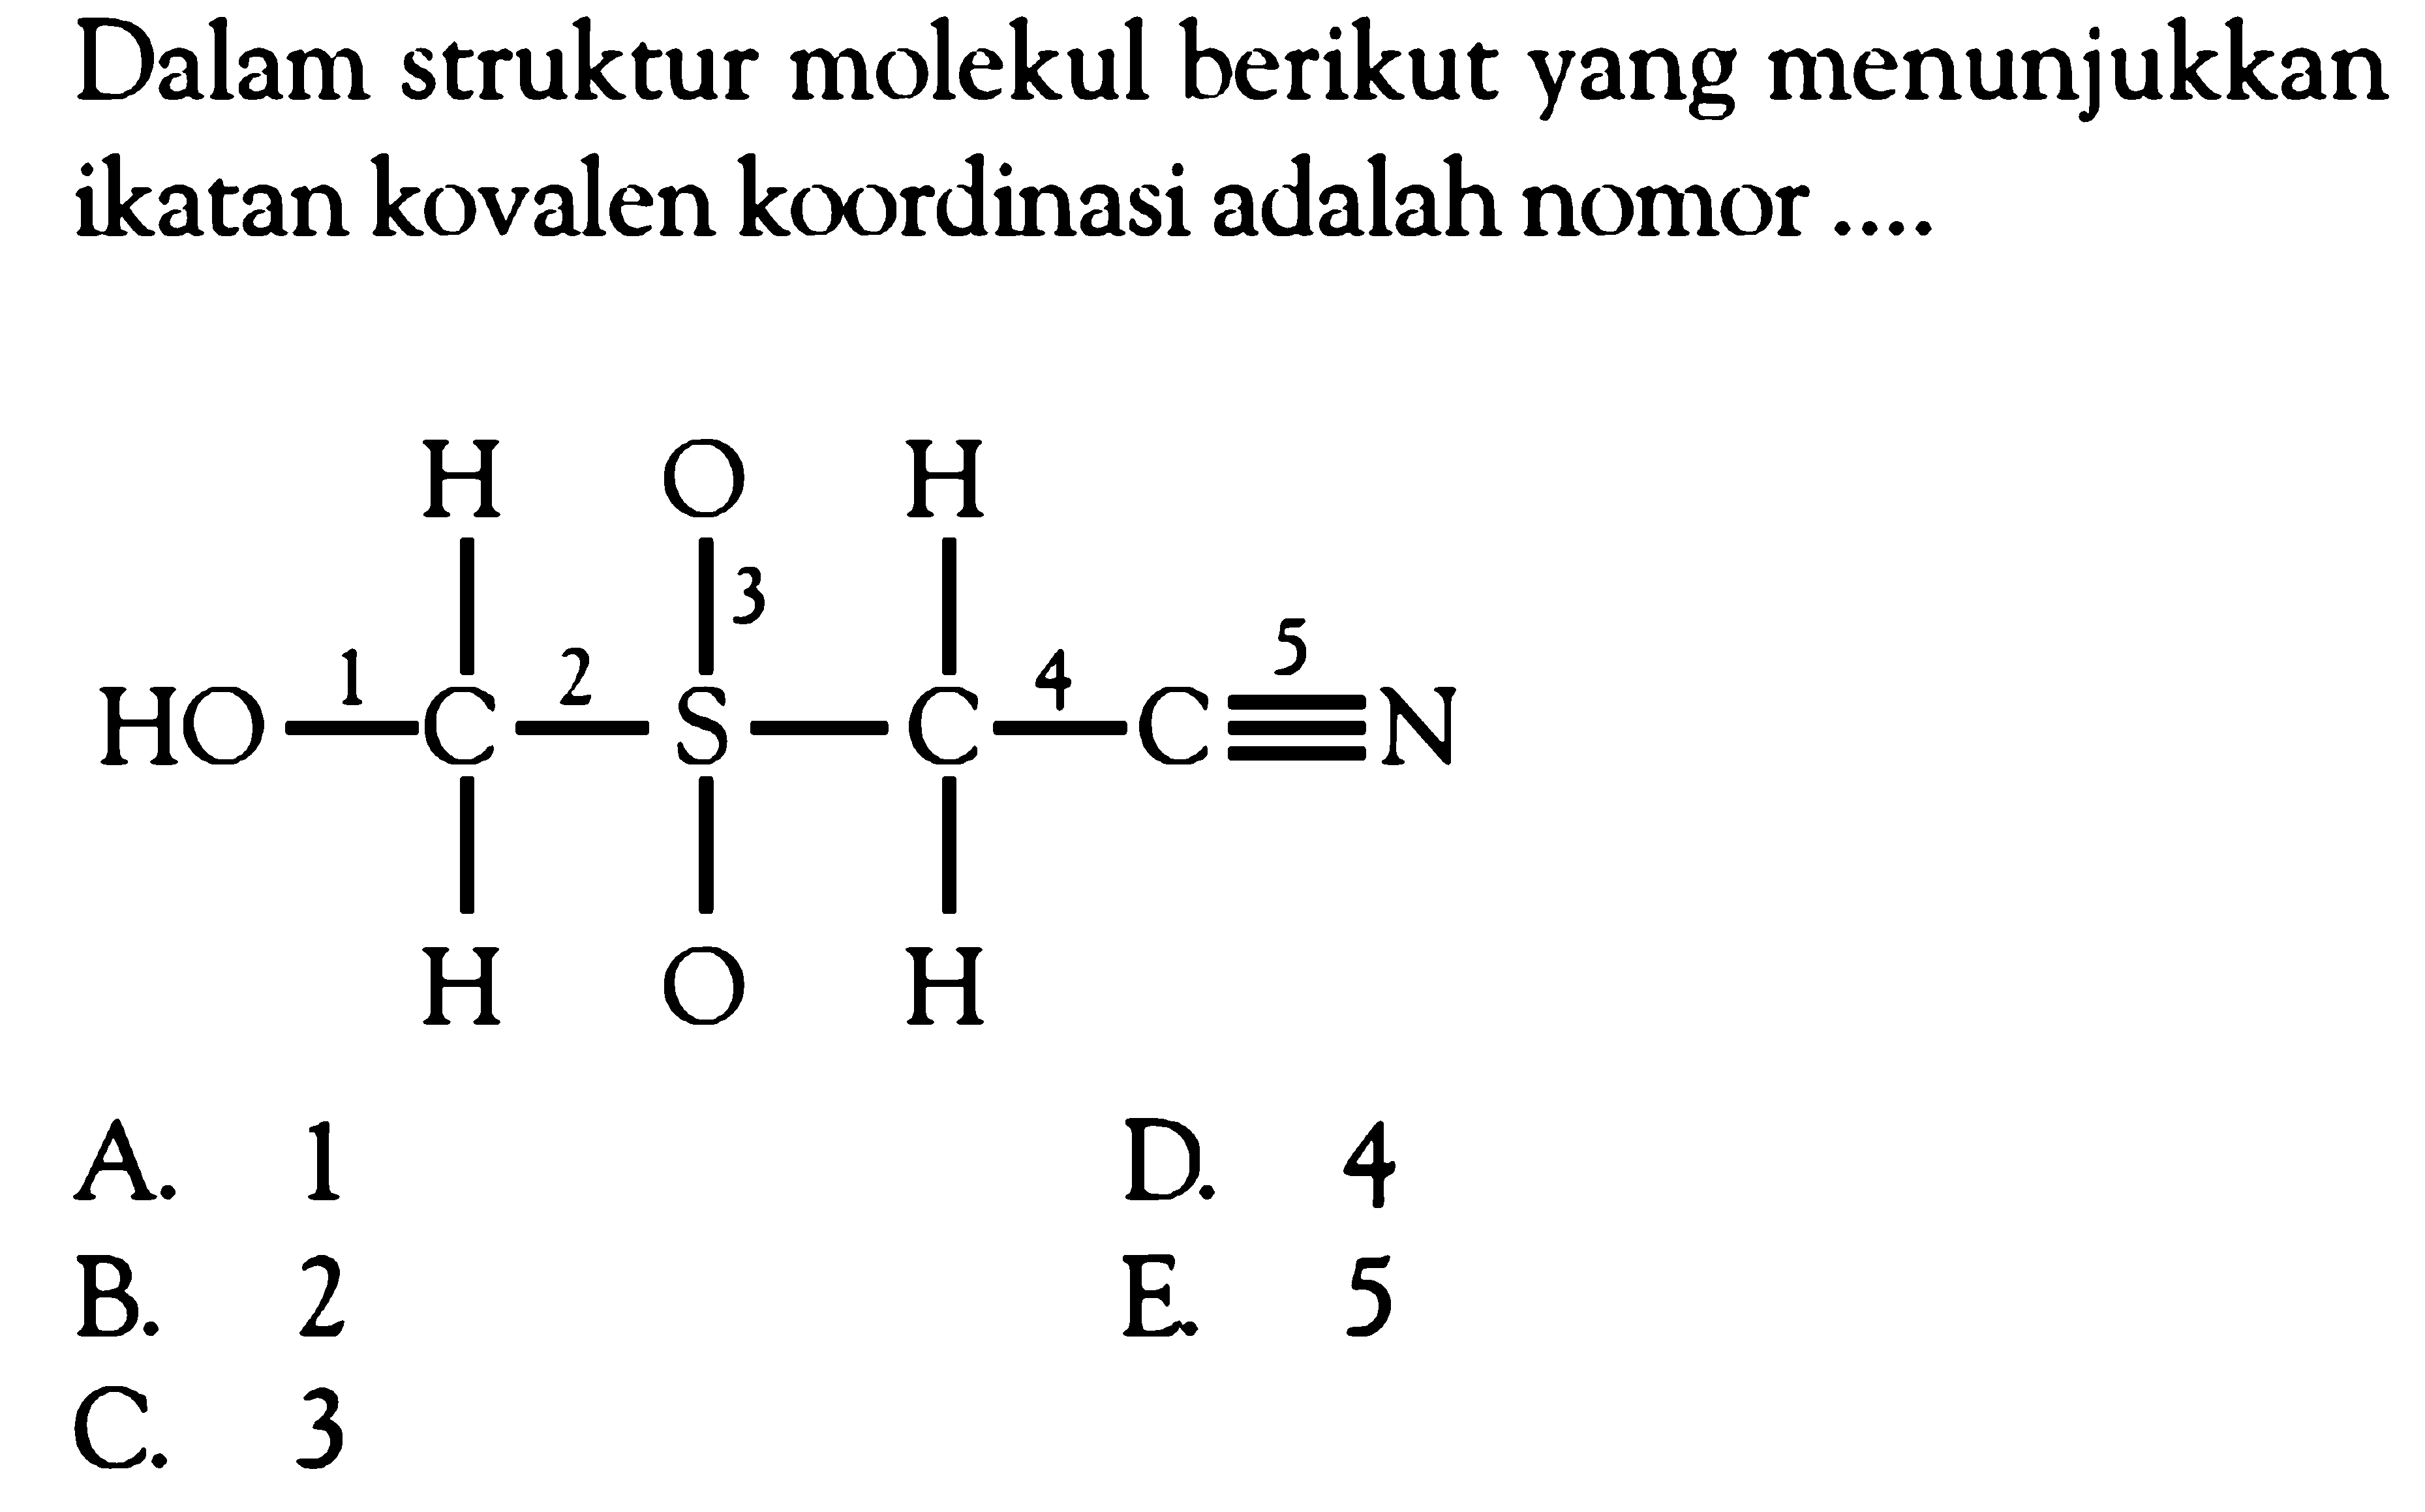 Dalam struktur molekul berikut yang menunjukkan ikatan kovalen koordinasi adalah nomor .... H O H HO - C - S - C - C = N H O H